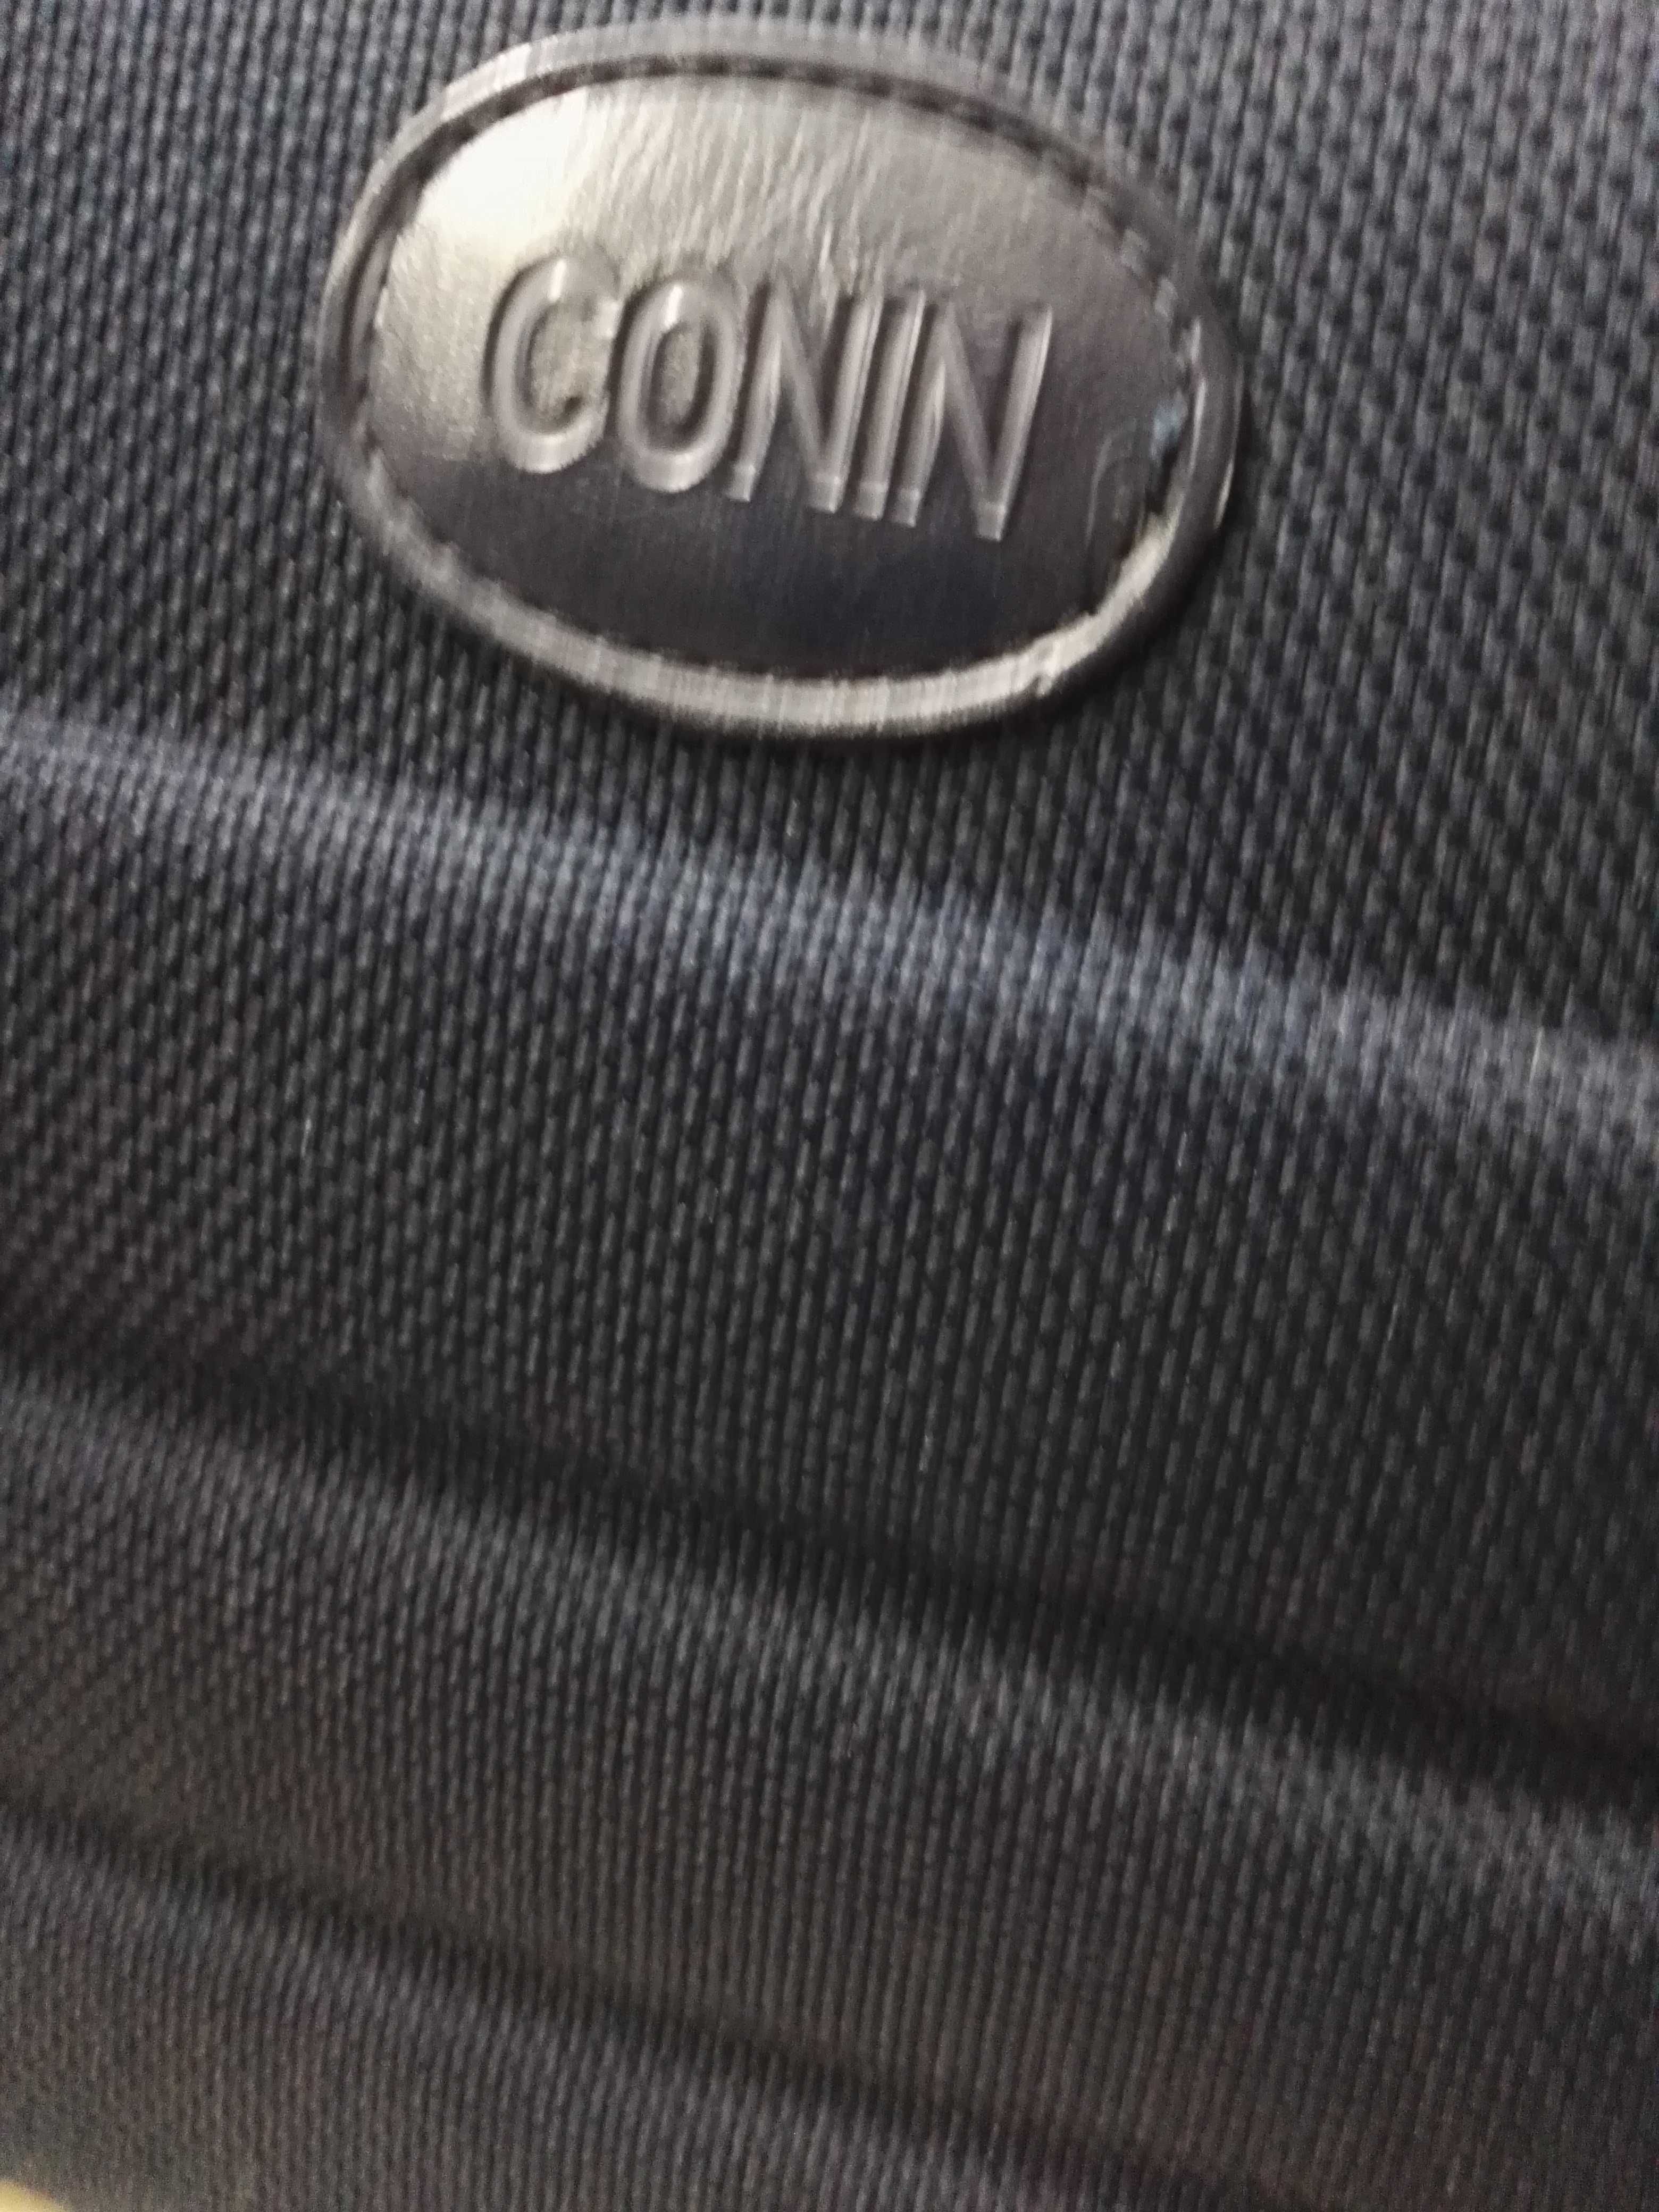 Kufer podróżny Conin na kosmetyki